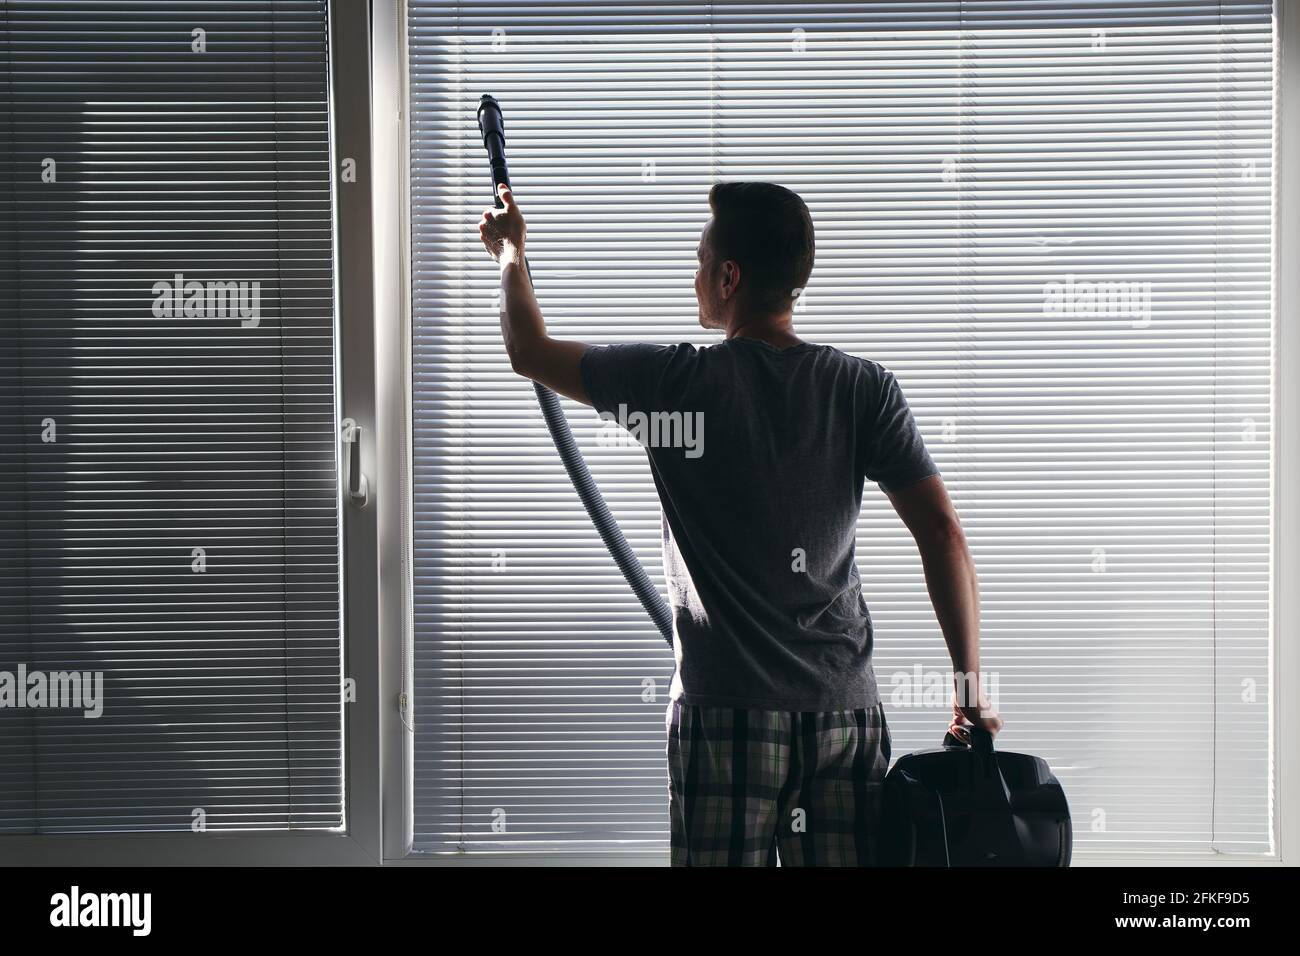 Mann, der zu Hause mit dem Staubsauger Staub von der Fensterblende reinigt. Themen Hausarbeit und Housekeeping. Stockfoto